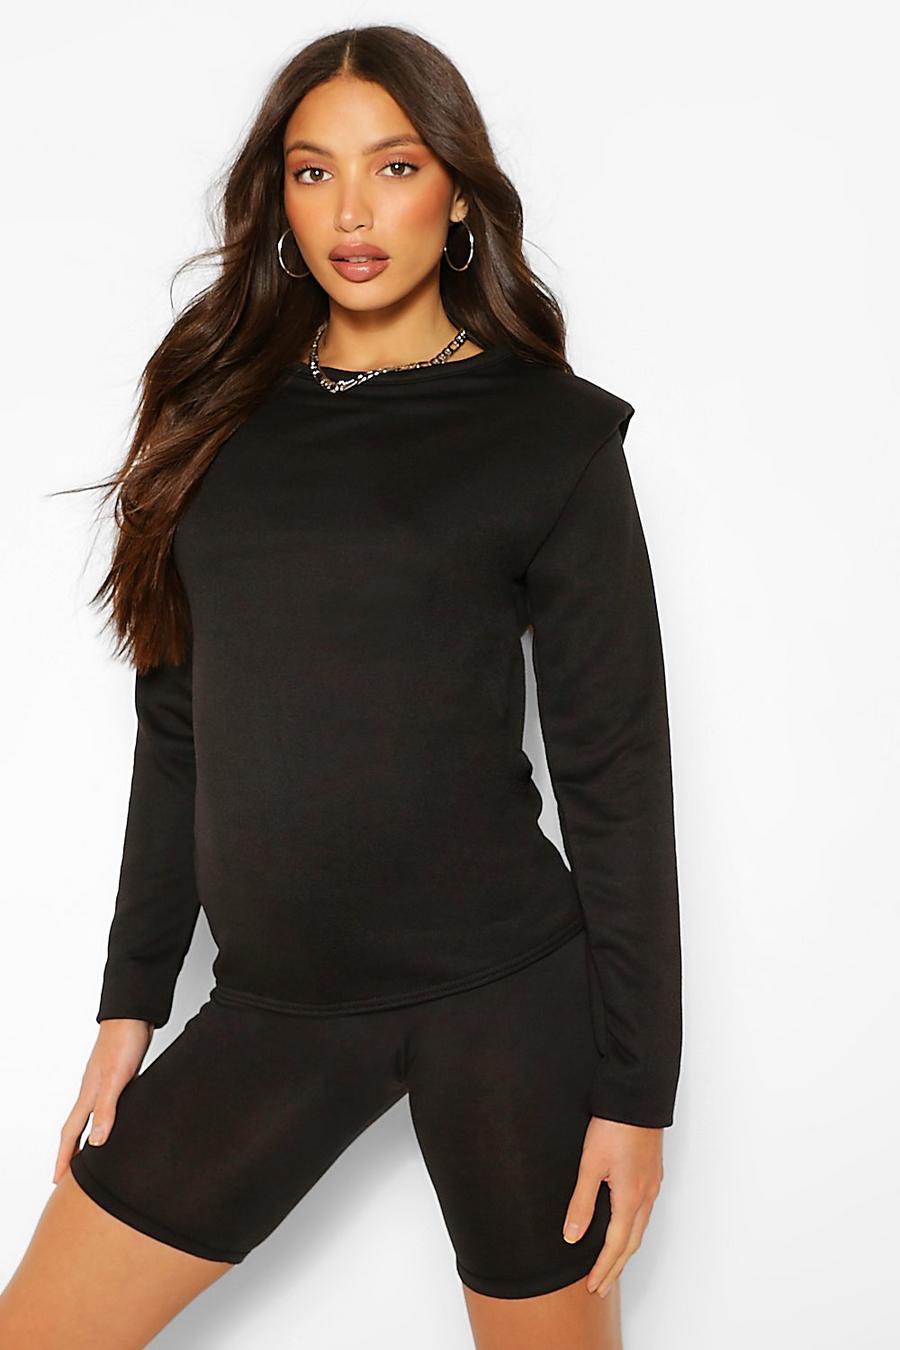 שחור סוודר עם שרוולים ארוכים ורפידות בכתפיים לנשים גבוהות image number 1